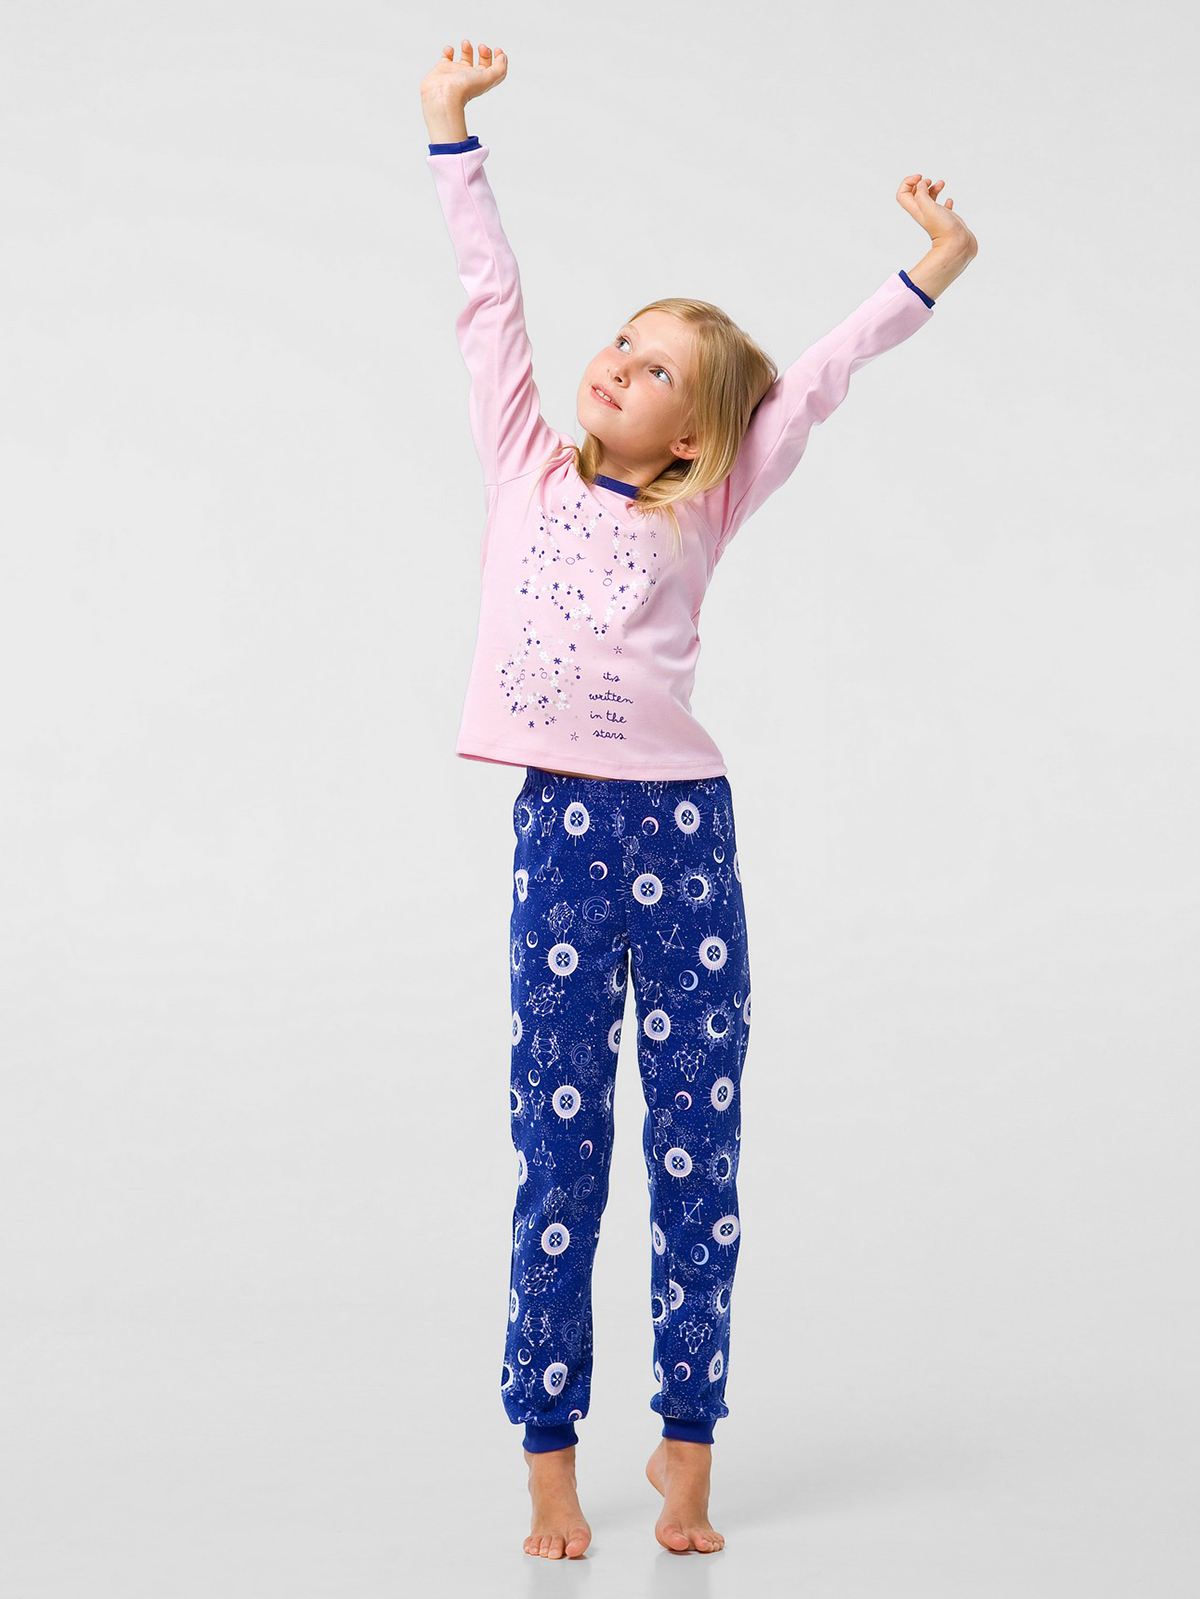 Піжама для дівчинки, арт.104490, від 7 до 10 років